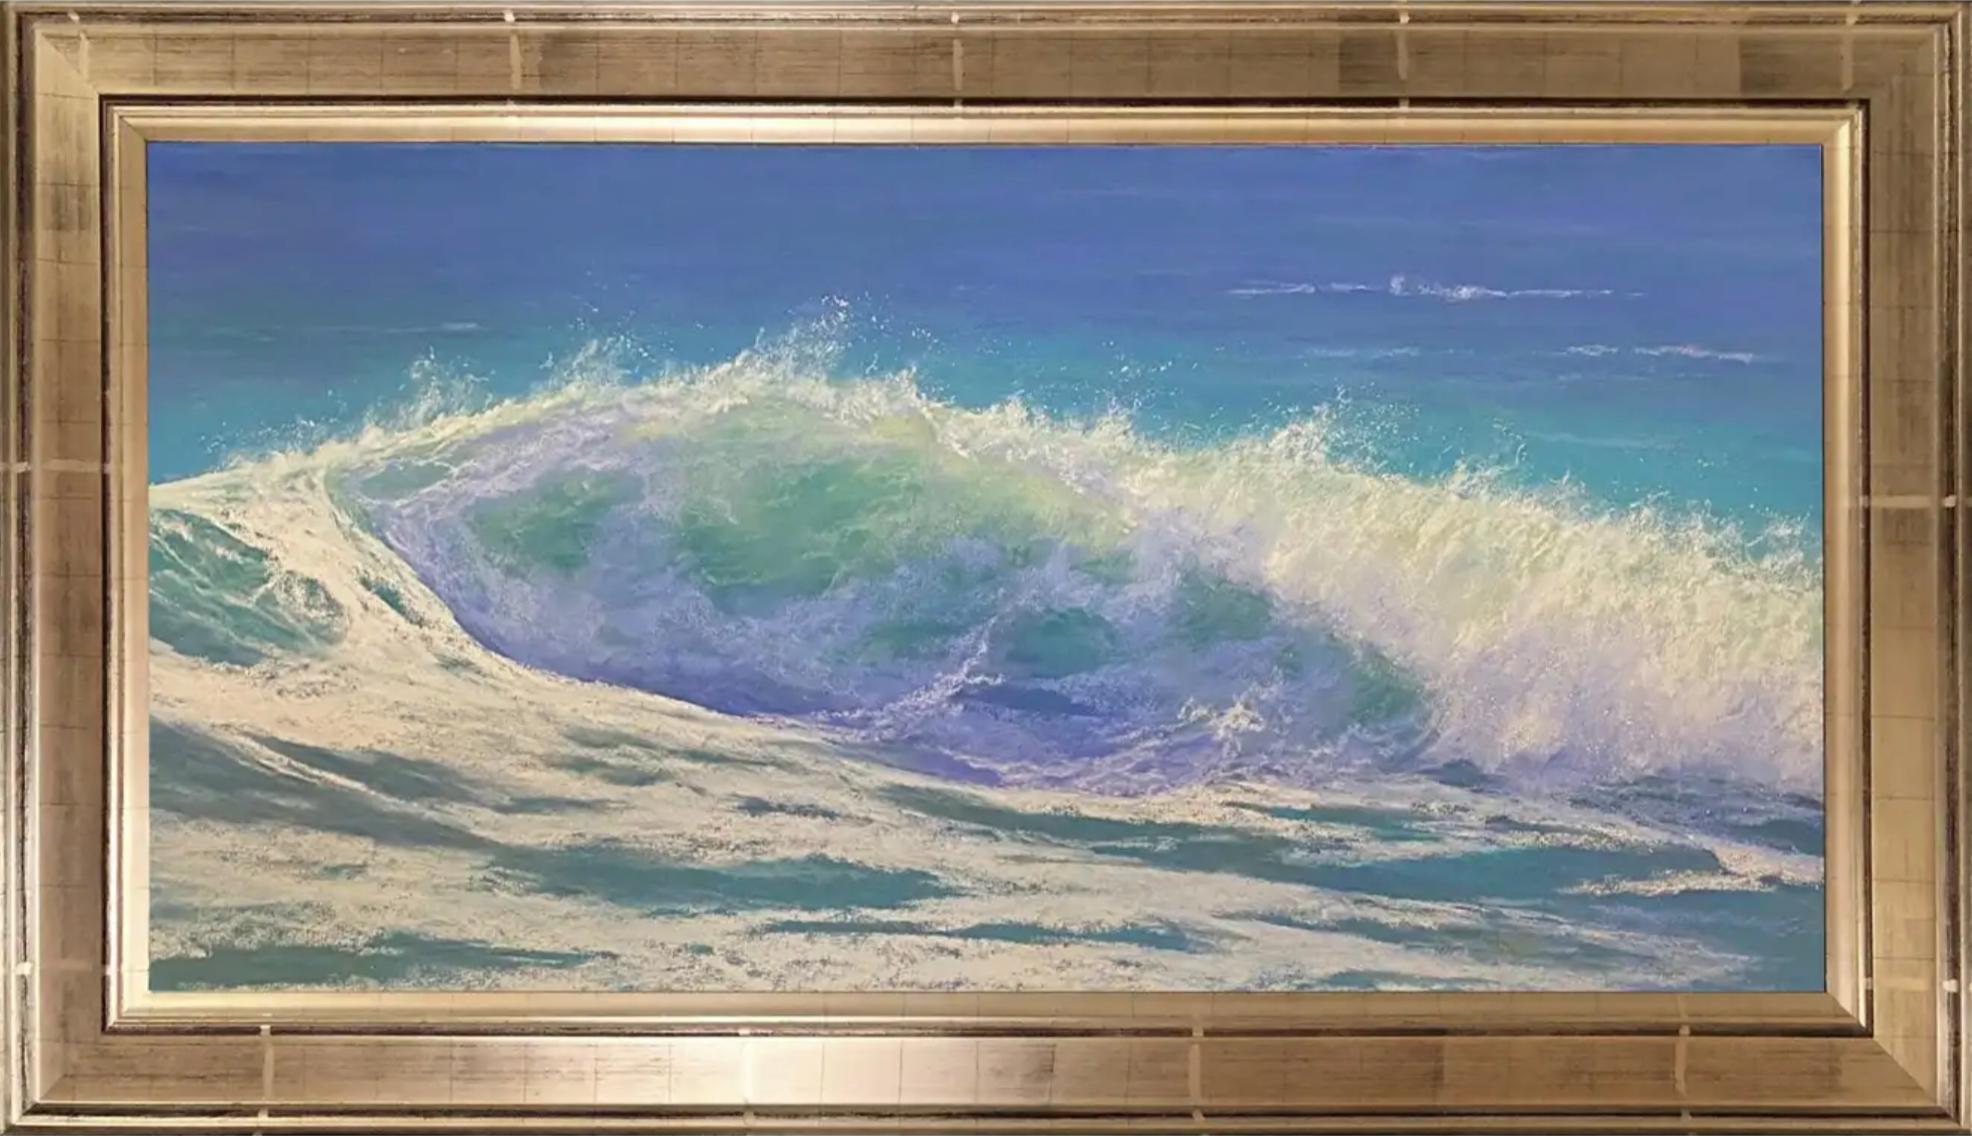 Warm Wasser, gerahmtes Original-Impressionistisches Pastellgemälde mit Meereslandschaft auf Papier